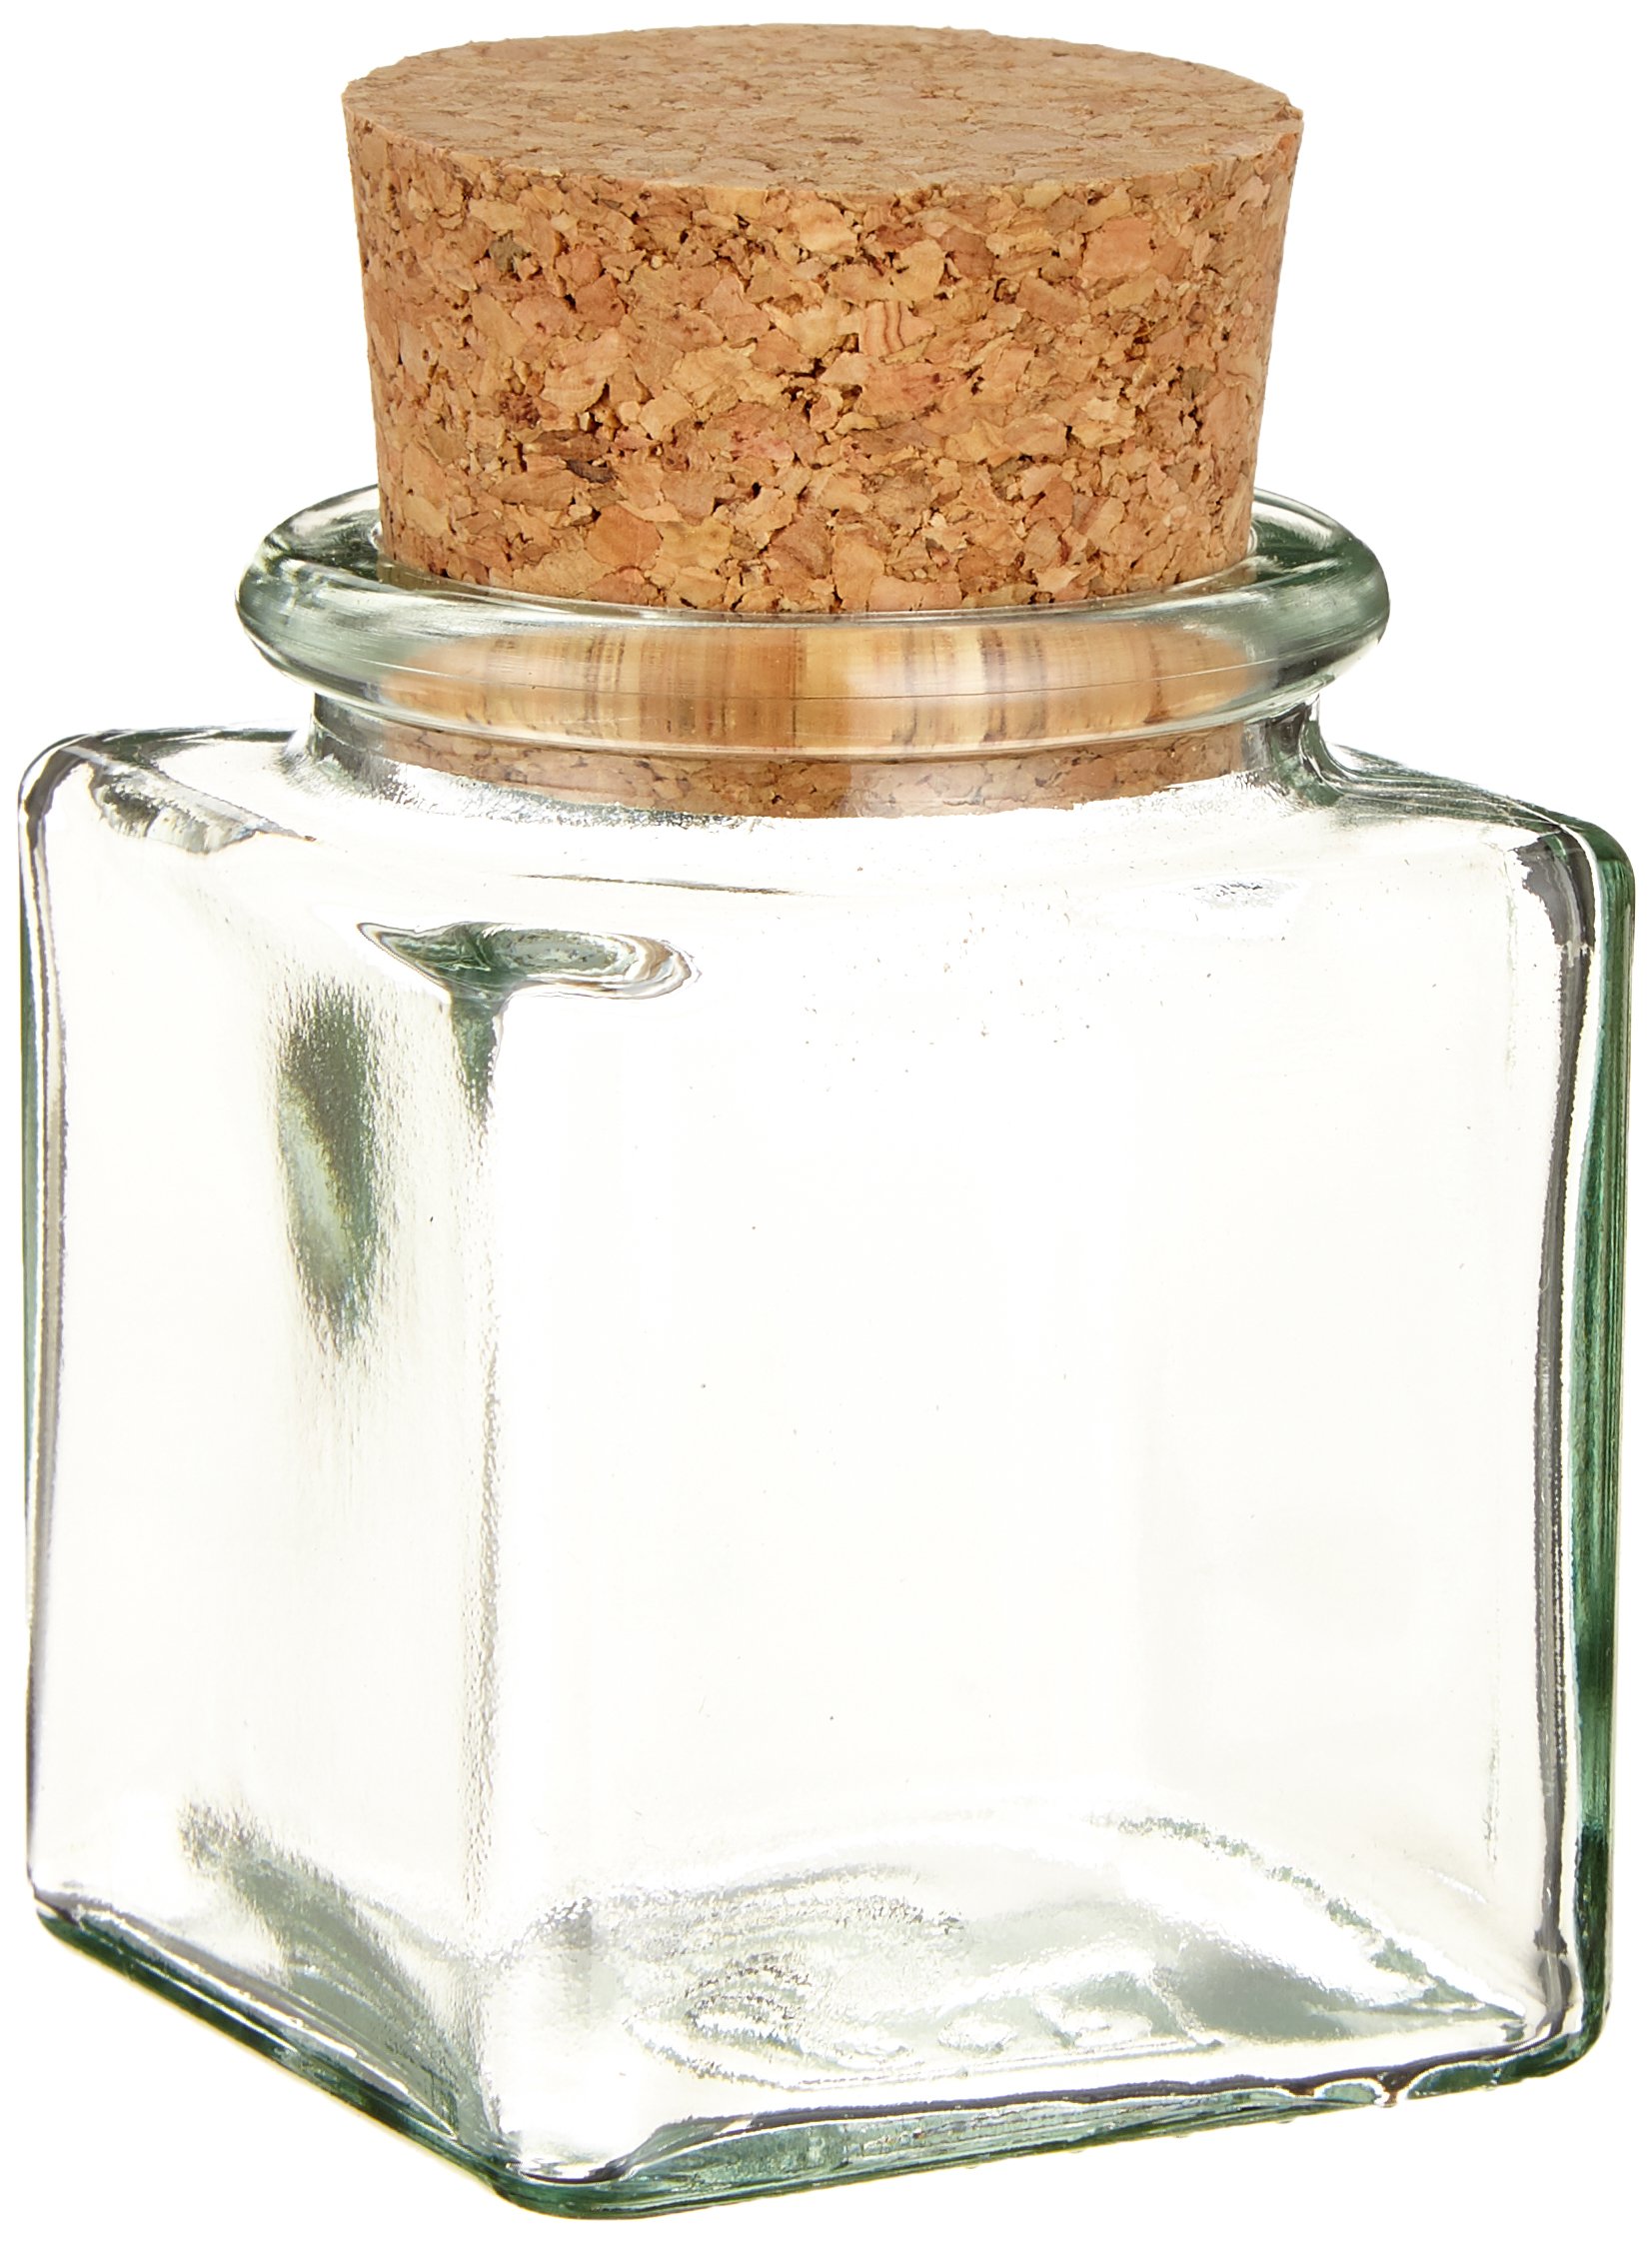 8 kleine Gewürzgläser / Glasdosen mit Korkverschluss für Gewürze, Salz, Kräuter, etc. ca. 100 ml - inkl. einer Gewürzschaufel aus Holz 7,5 cm